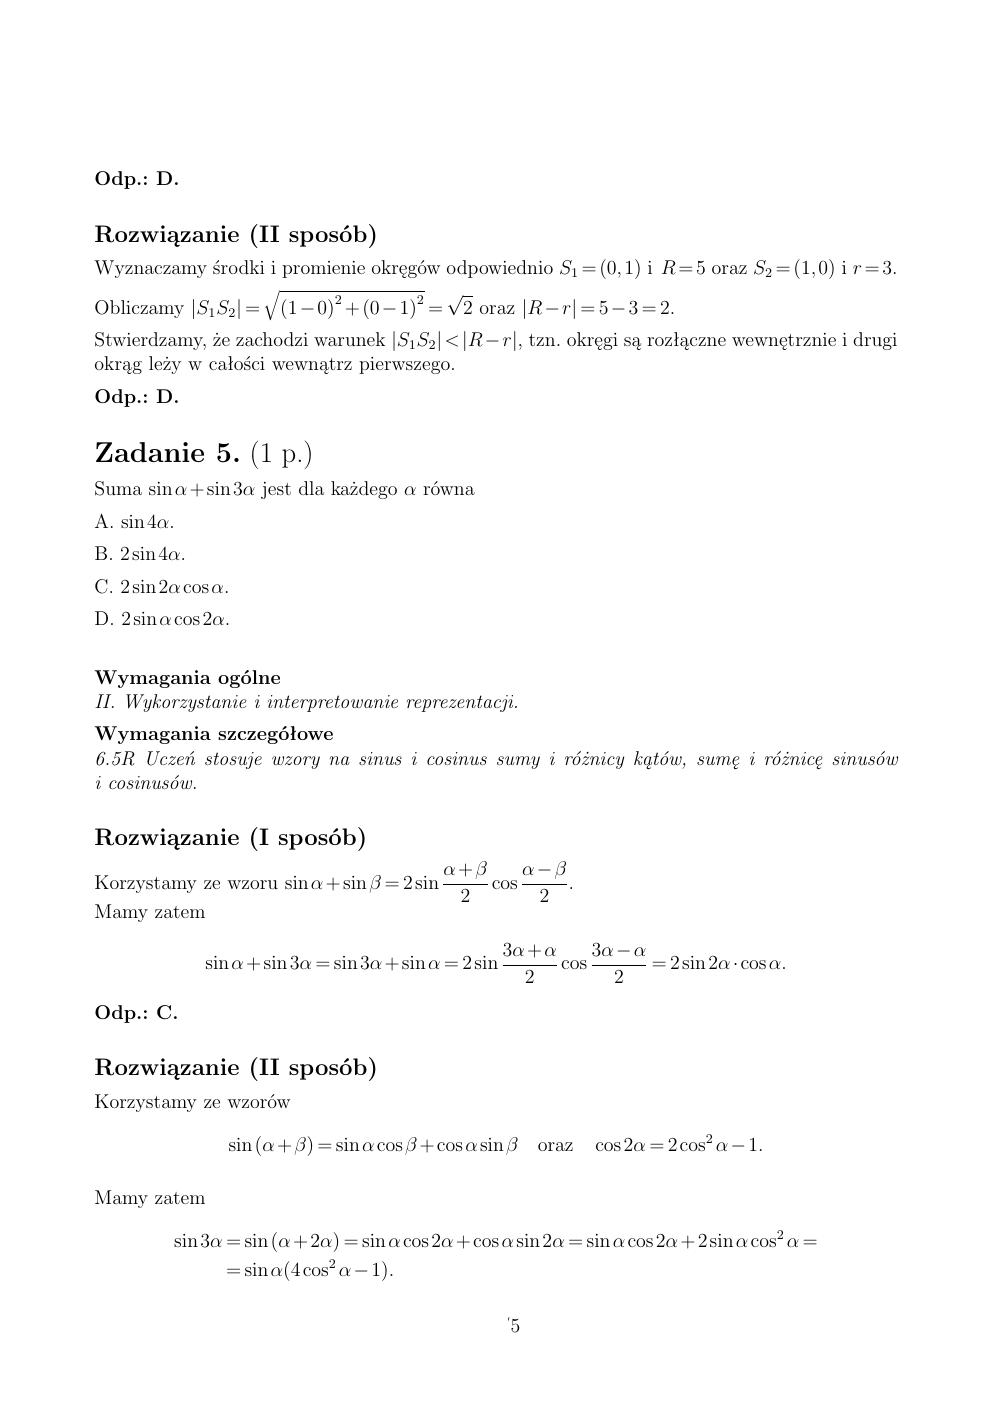 zasady oceniania - odpowiedzi - matematyka rozszerzony - matura 2015 przykładowa-05